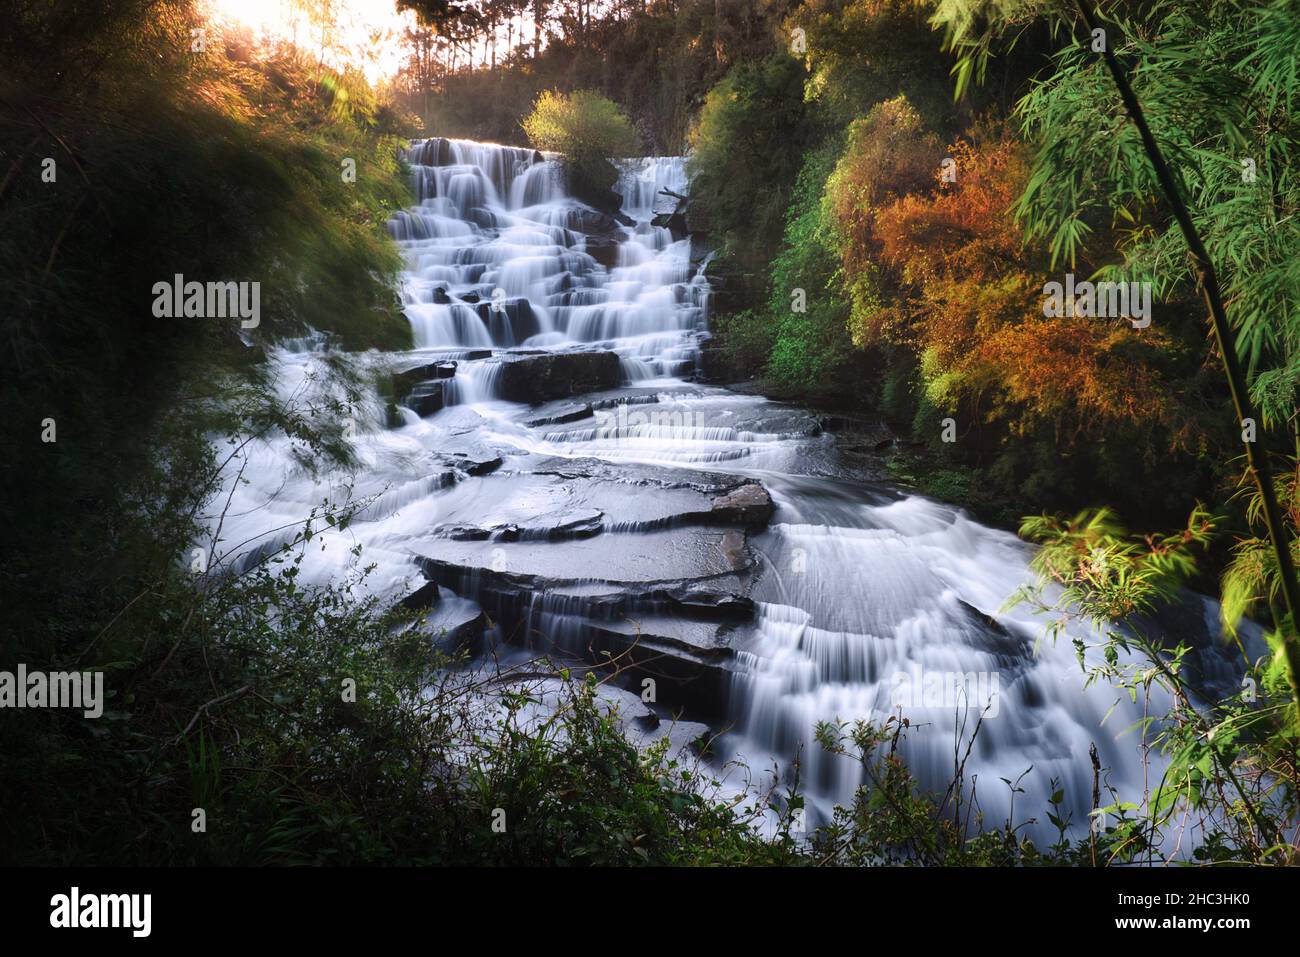 Foto a lunga esposizione della cascata di Canela Foto Stock